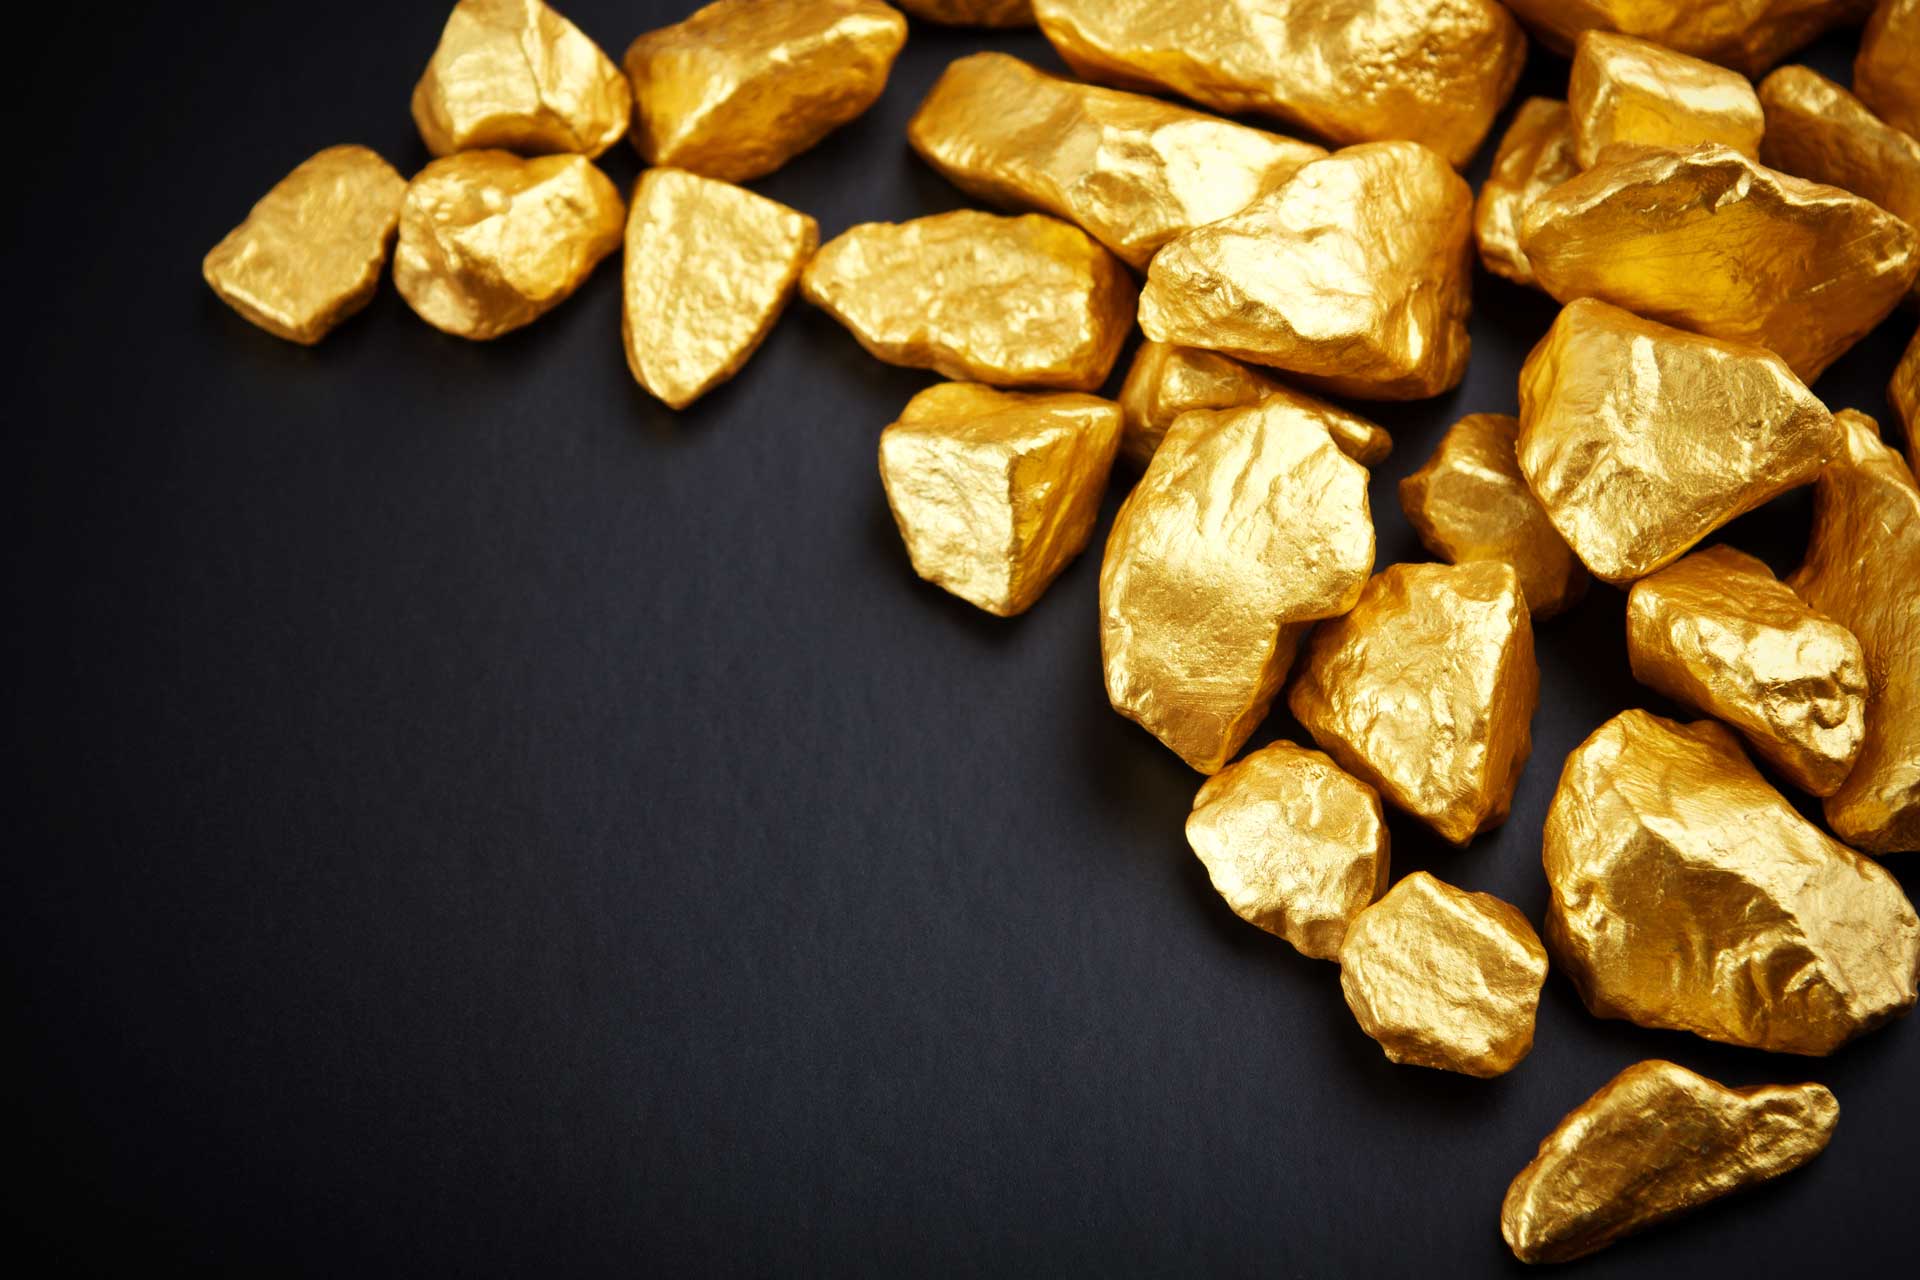 RG Gold построит золотоизвлекательную фабрику стоимостью более 160 млрд тенге в Акмолинской области